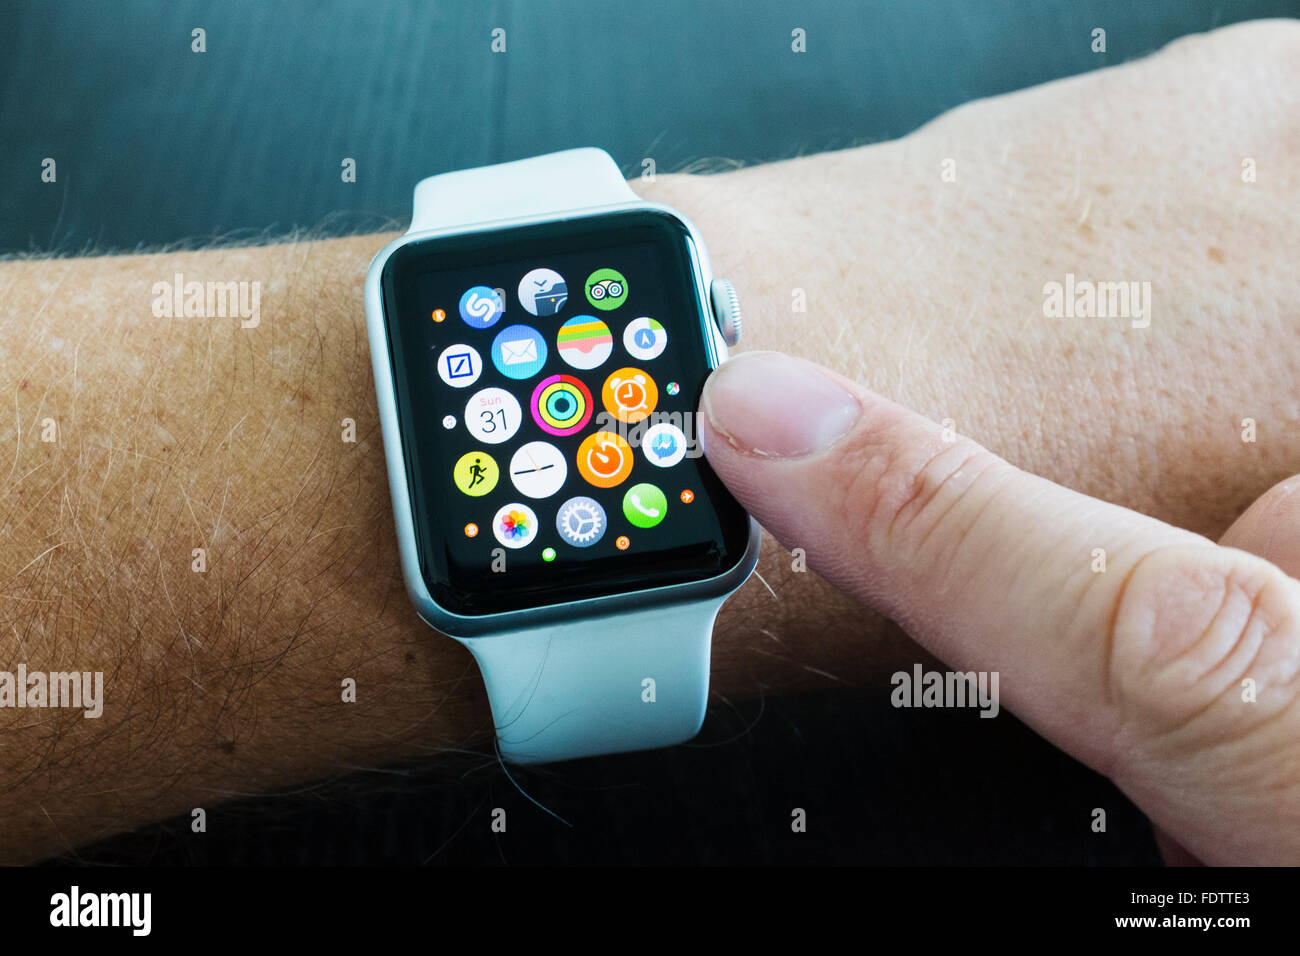 Dettaglio della schermata home con le icone delle app di Apple guarda con cinturino bianco Foto Stock